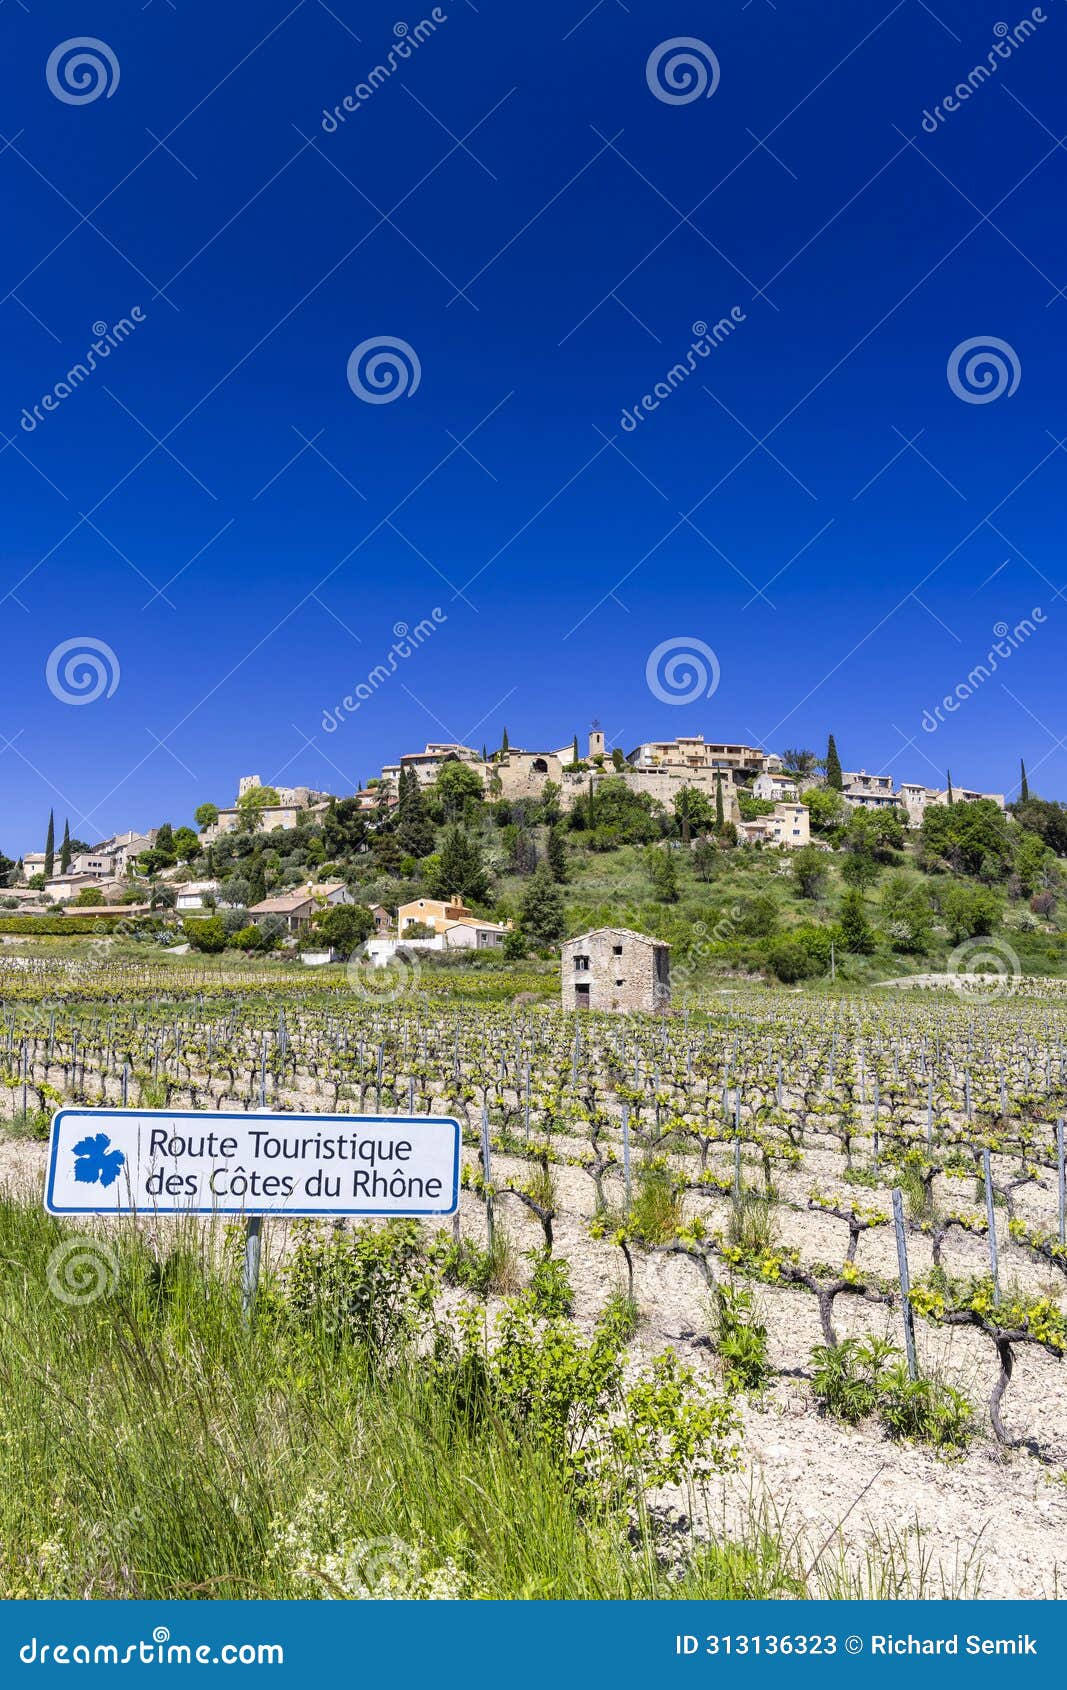 typical vineyard with wine road (route touristique des cotes du rhone) near faucon, cotes du rhone, france